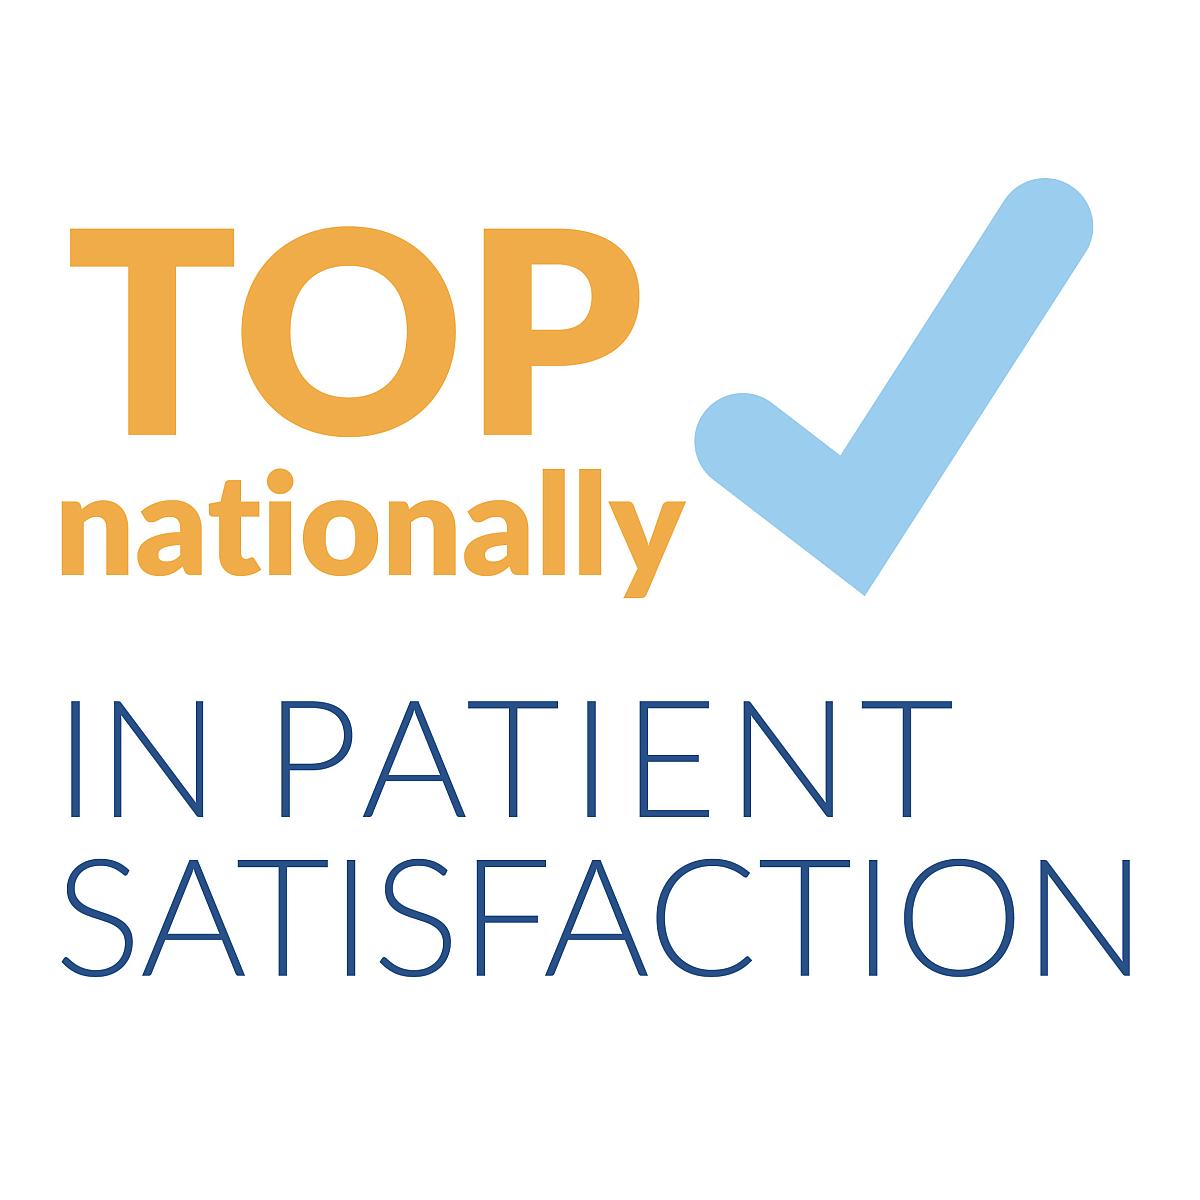 Top nationally in patient satisfaction